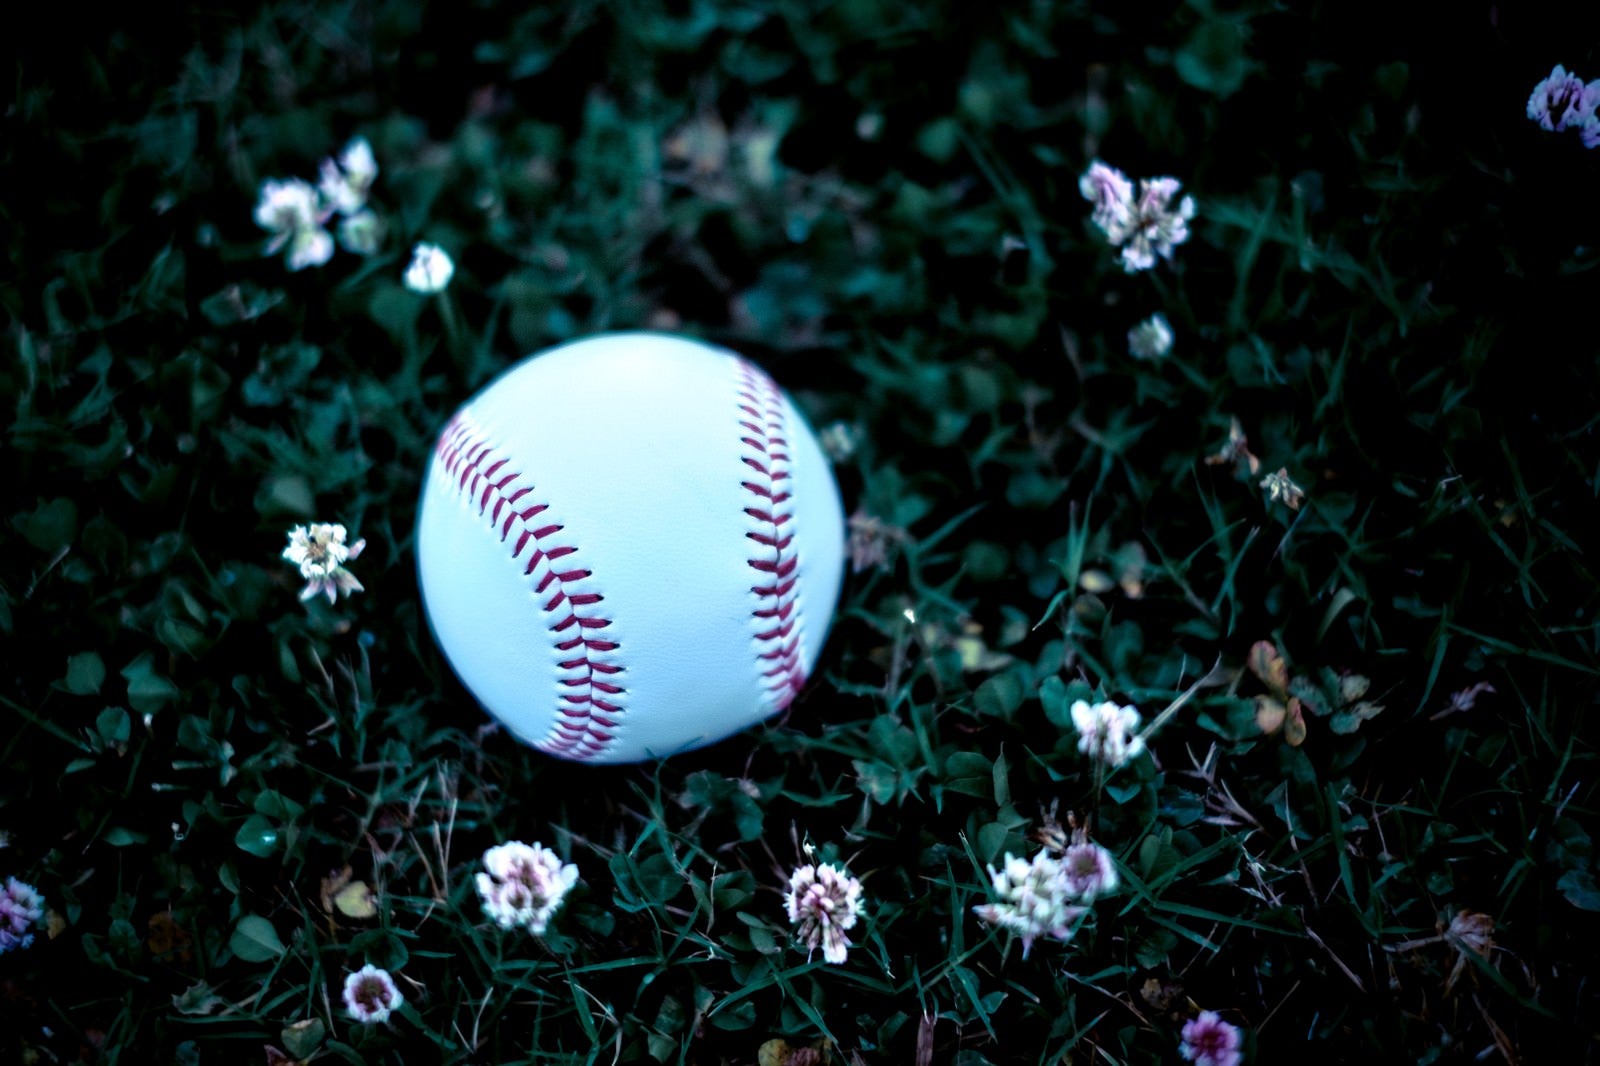 「足元に転がる野球のボール」の写真